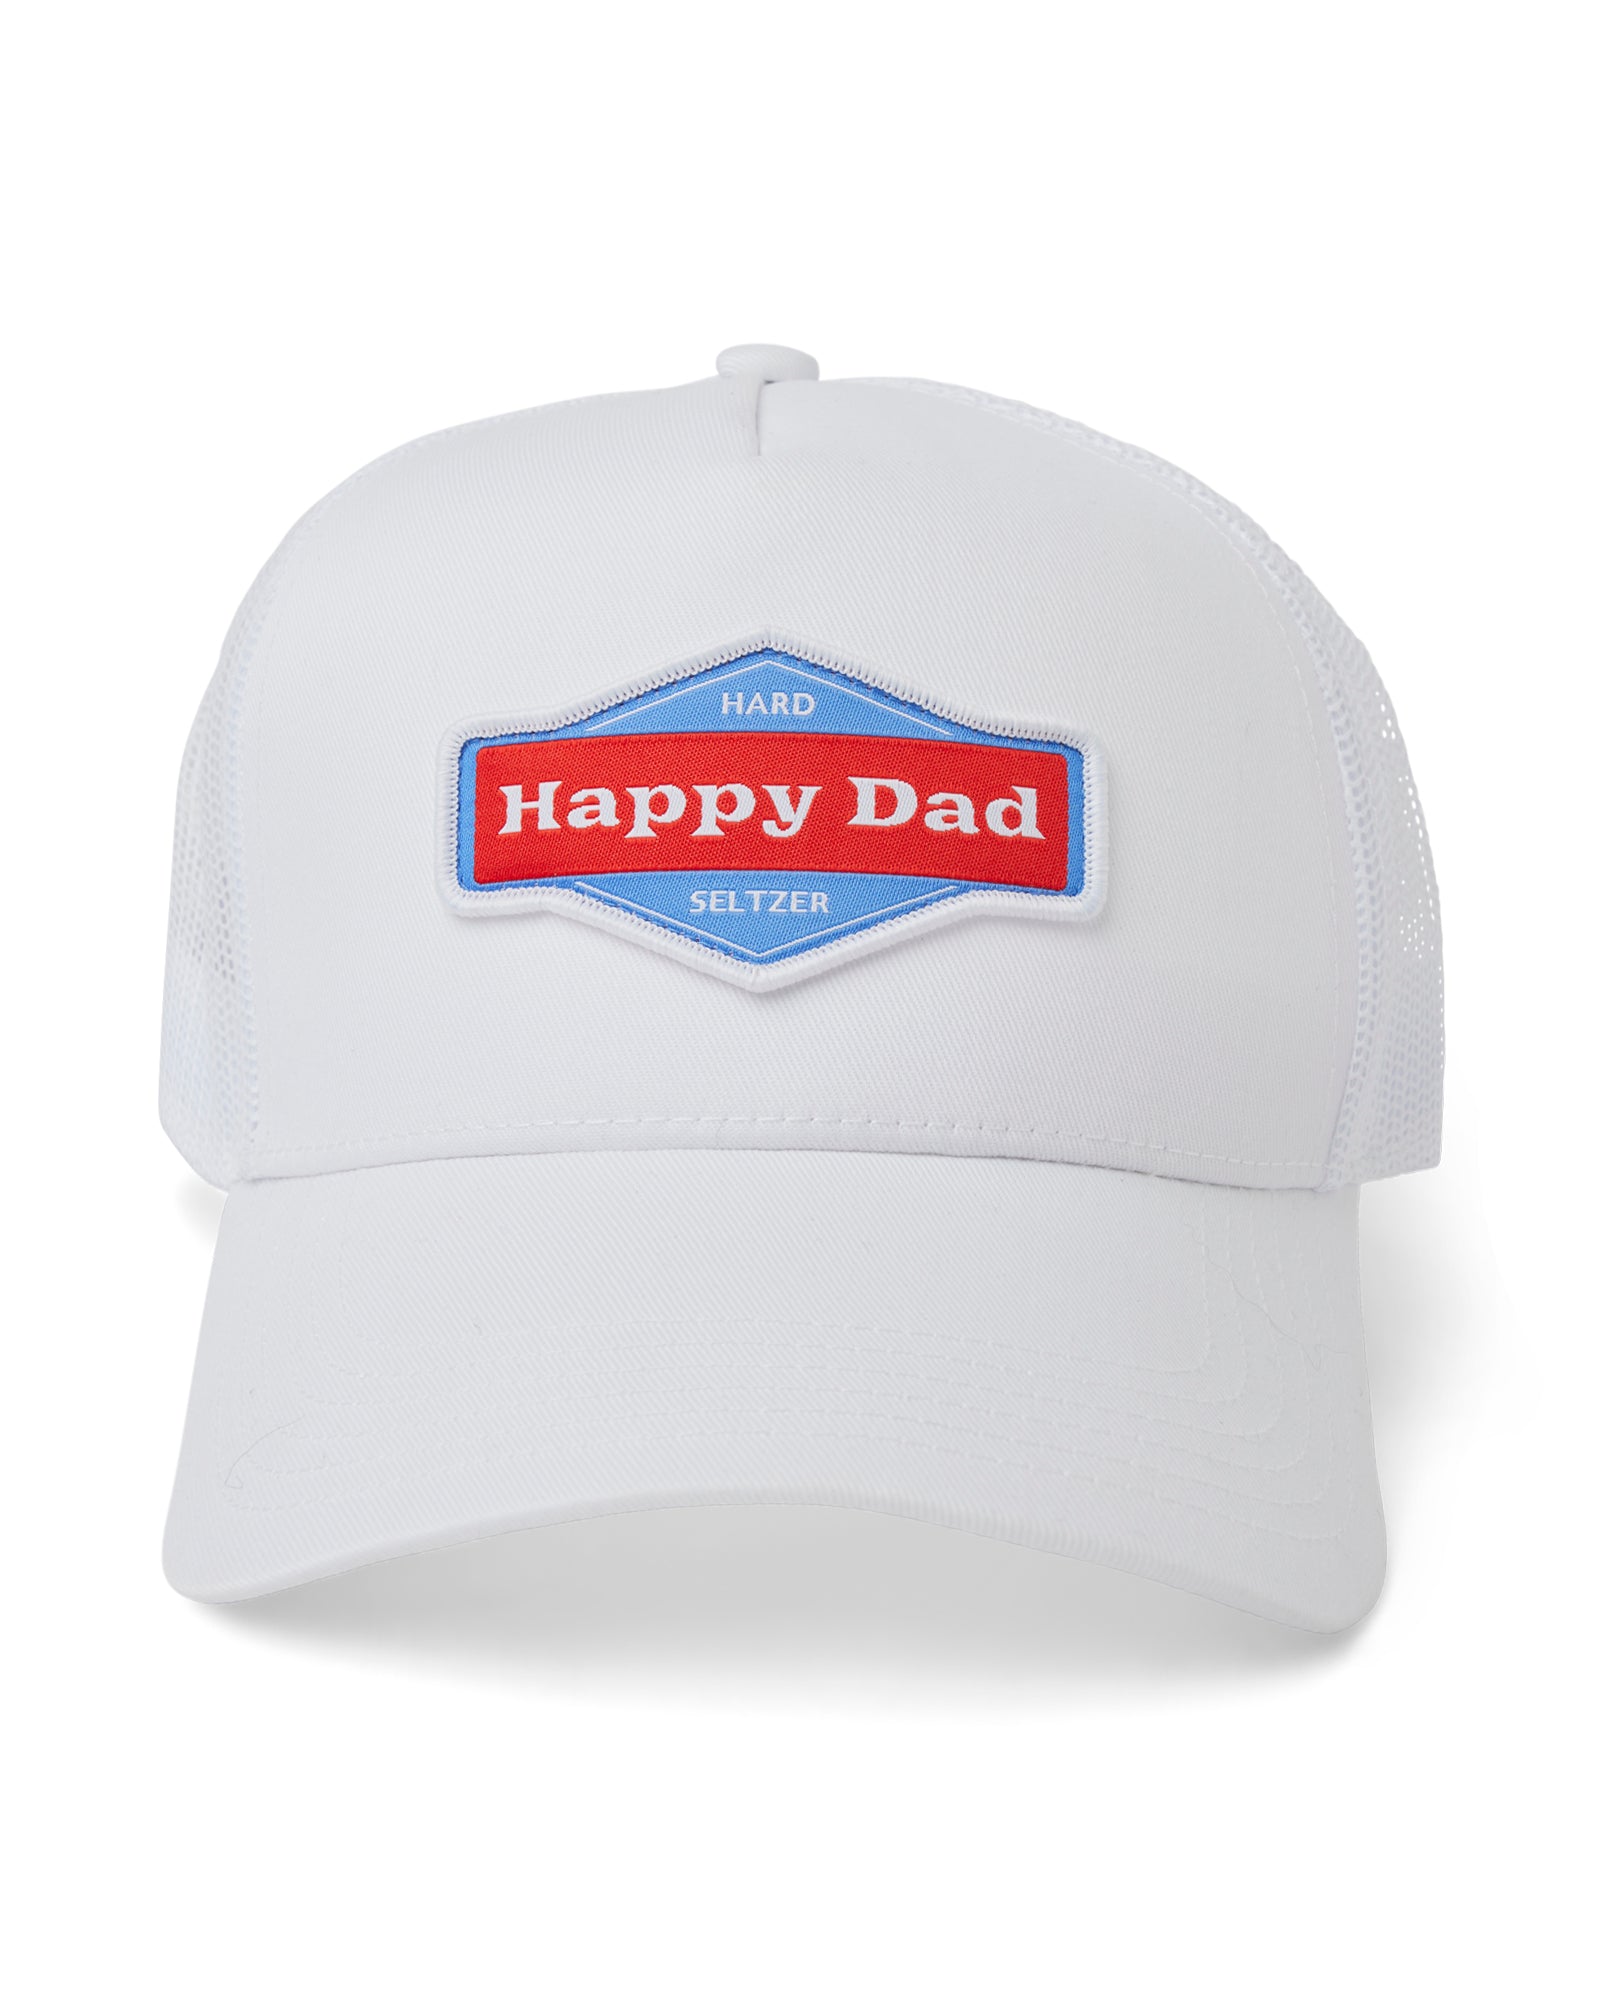 Happy Dad Trucker Hat (White)